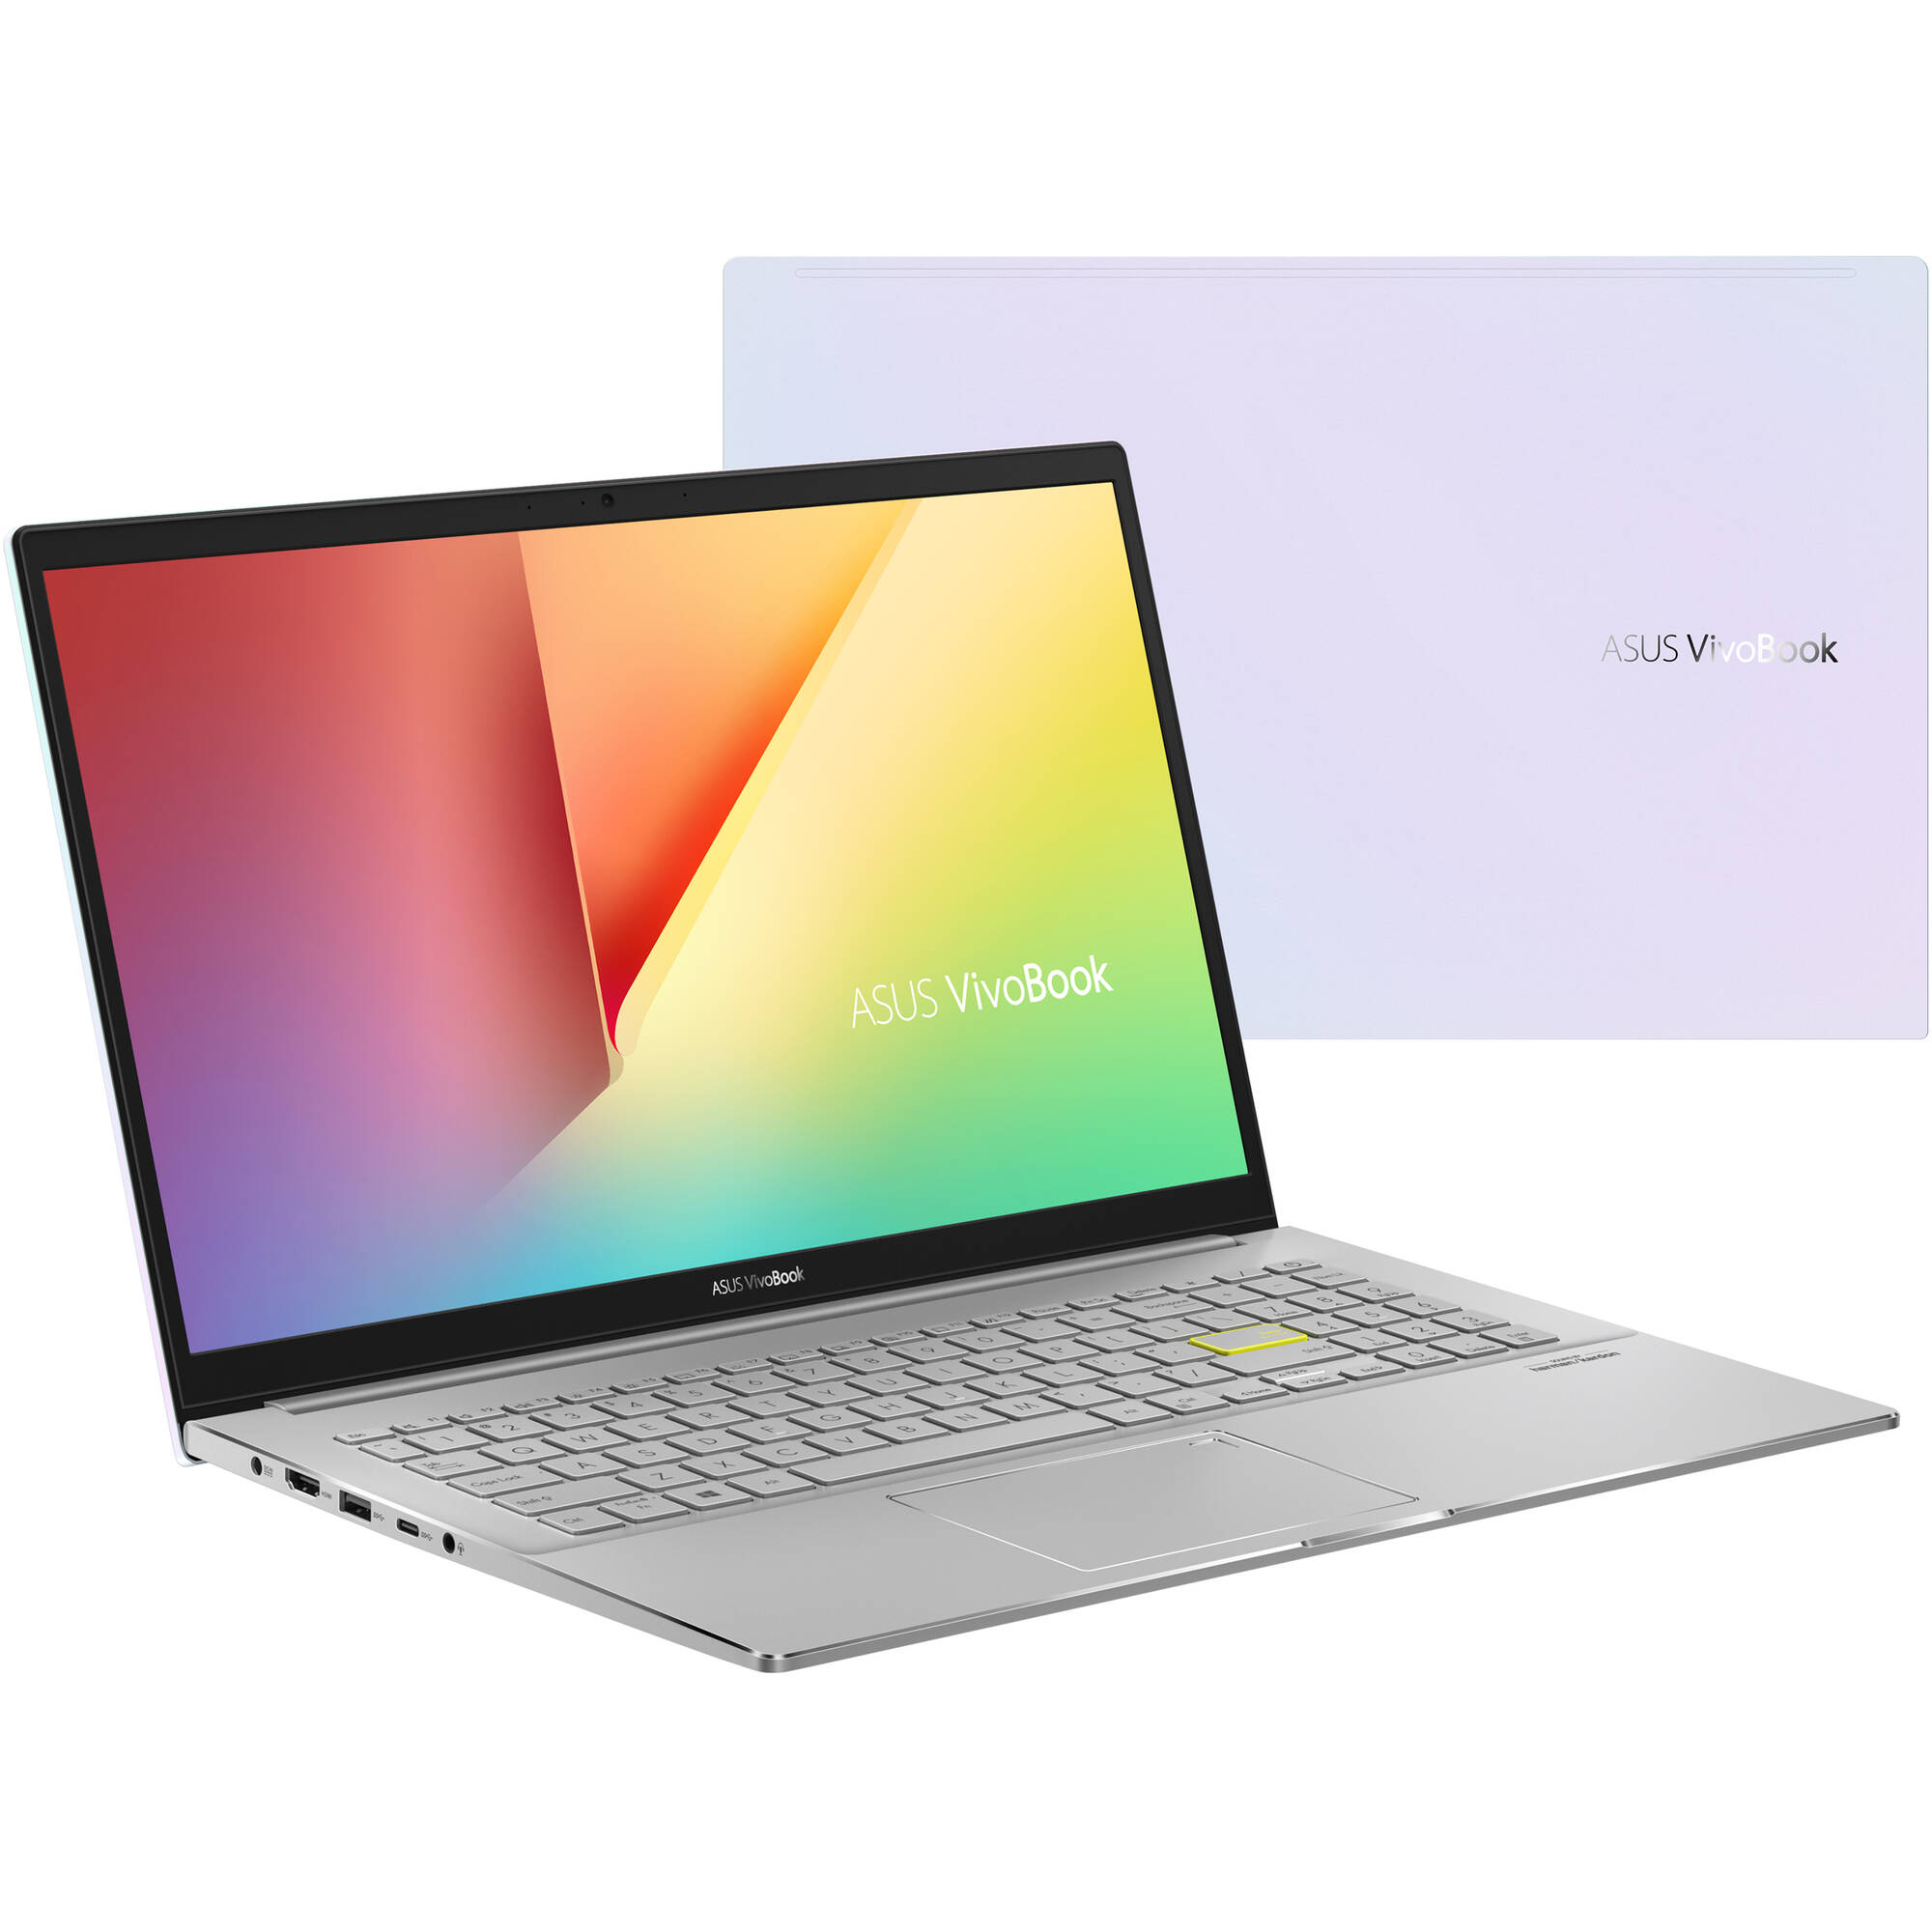 Laptop Asus VivoBook S15 S533EA-DH51-WH 15.6" Dreamy White